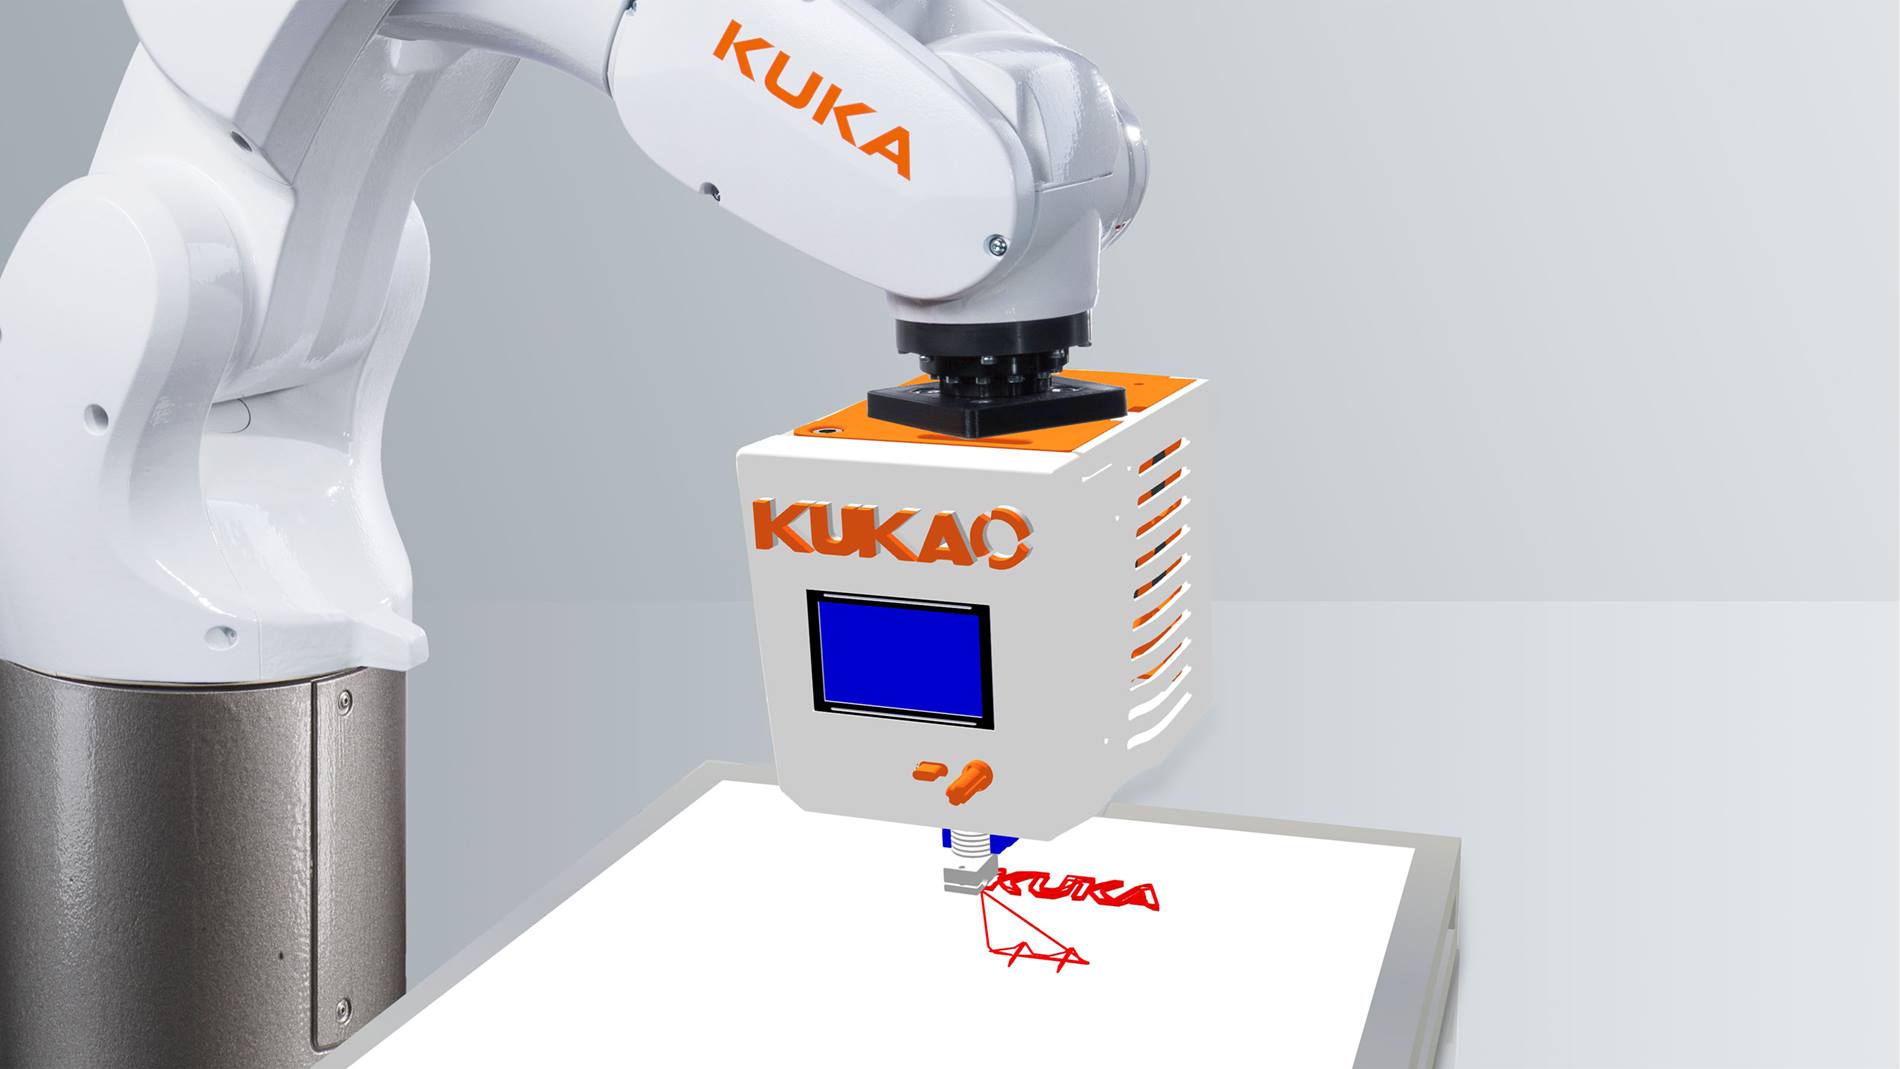 KUKA 在法国举办的机器人竞赛